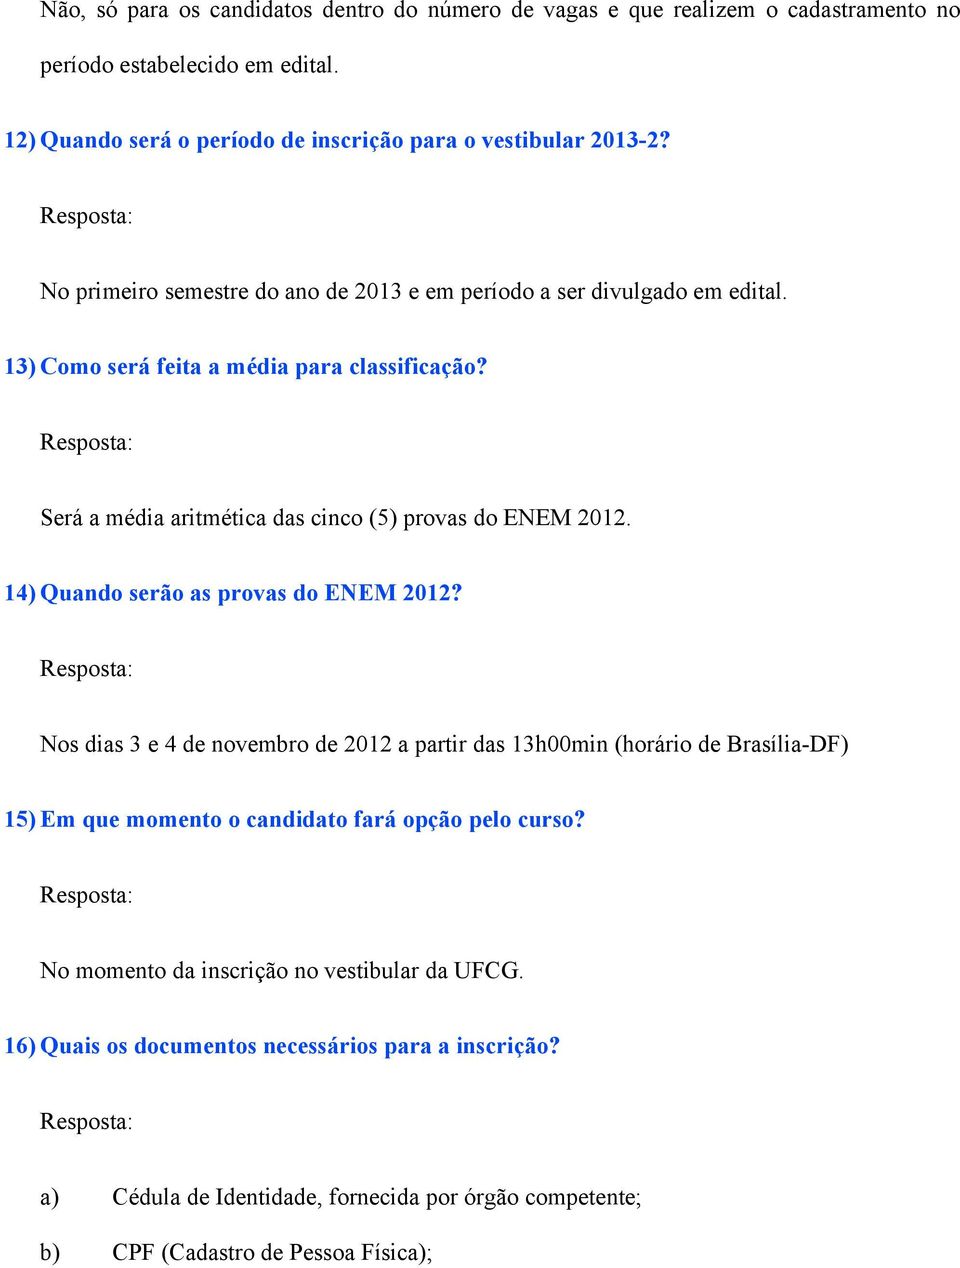 14) Quando serão as provas do ENEM 2012? Nos dias 3 e 4 de novembro de 2012 a partir das 13h00min (horário de Brasília-DF) 15) Em que momento o candidato fará opção pelo curso?